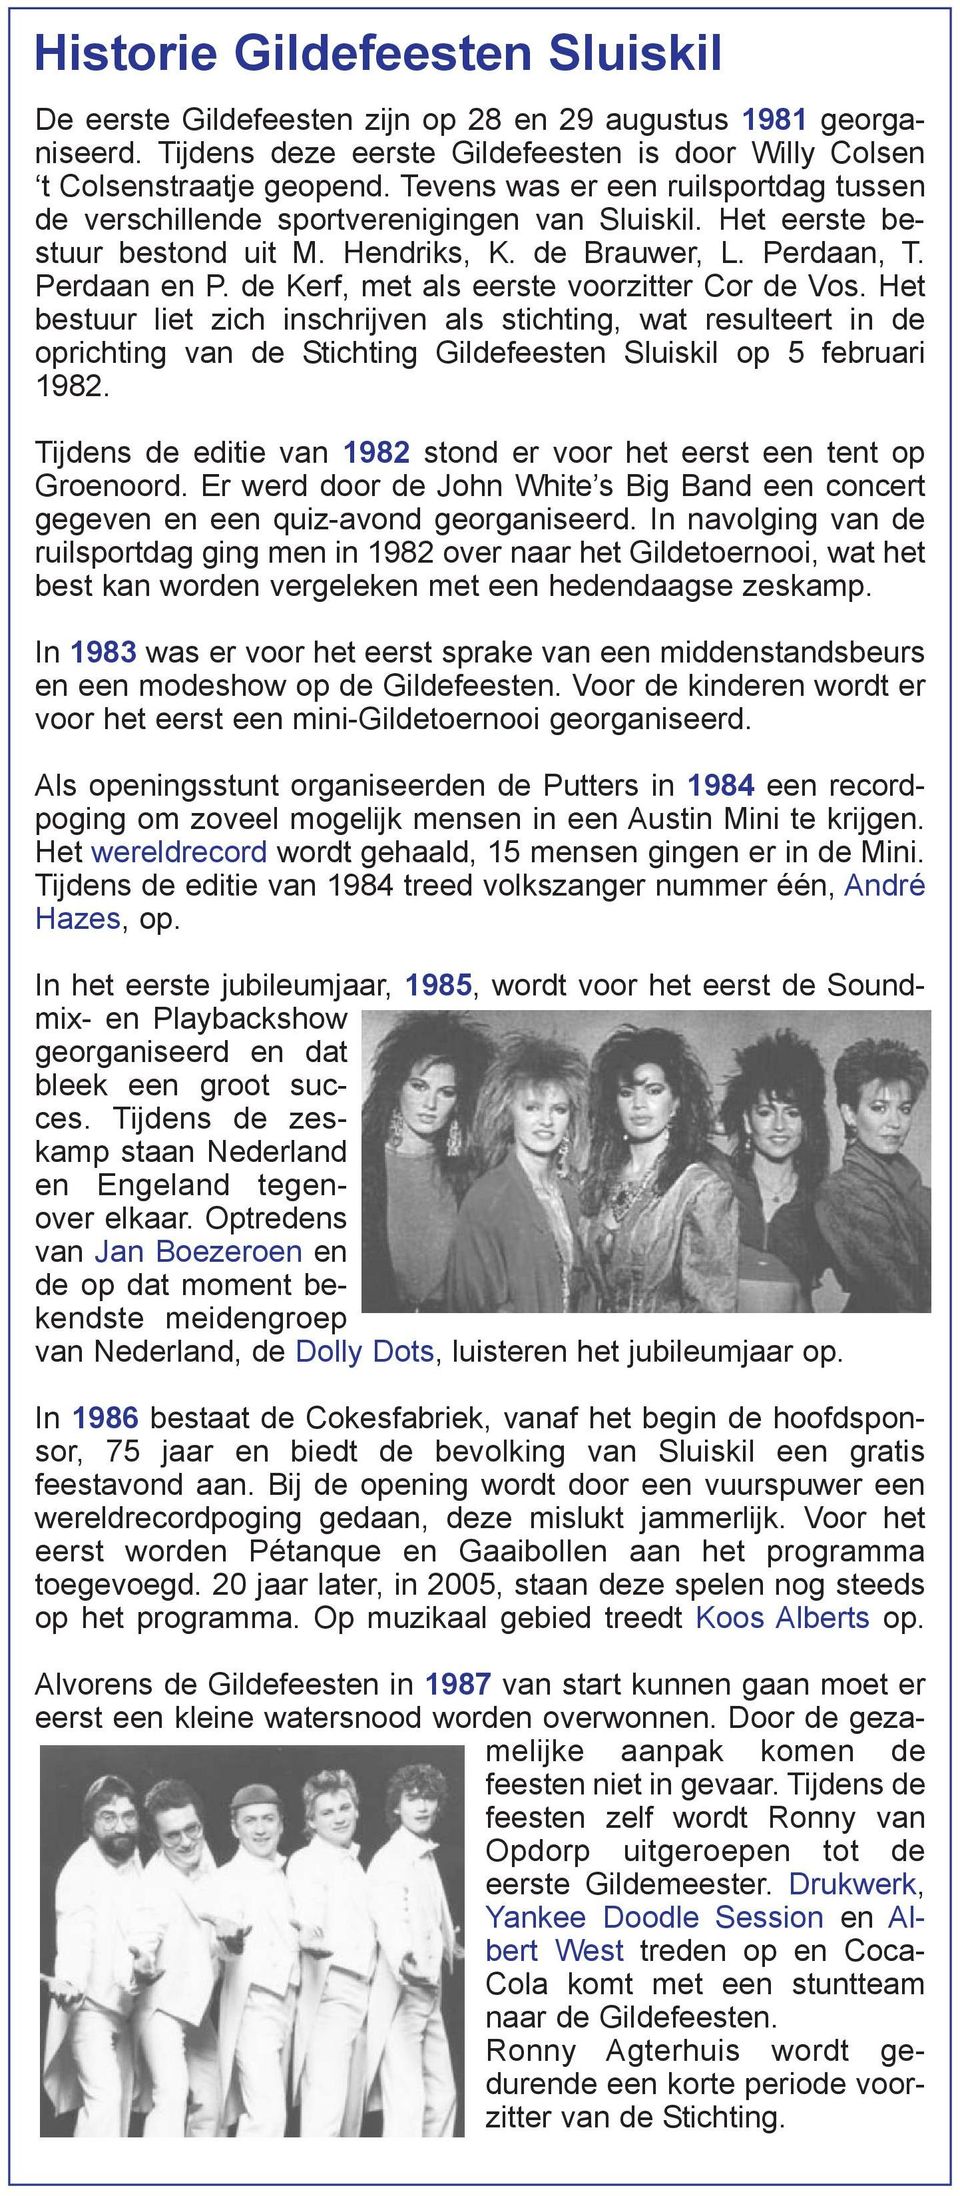 de Kerf, met als eerste voorzitter Cor de Vos. Het bestuur liet zich inschrijven als stichting, wat resulteert in de oprichting van de Stichting Gildefeesten Sluiskil op 5 februari 1982.